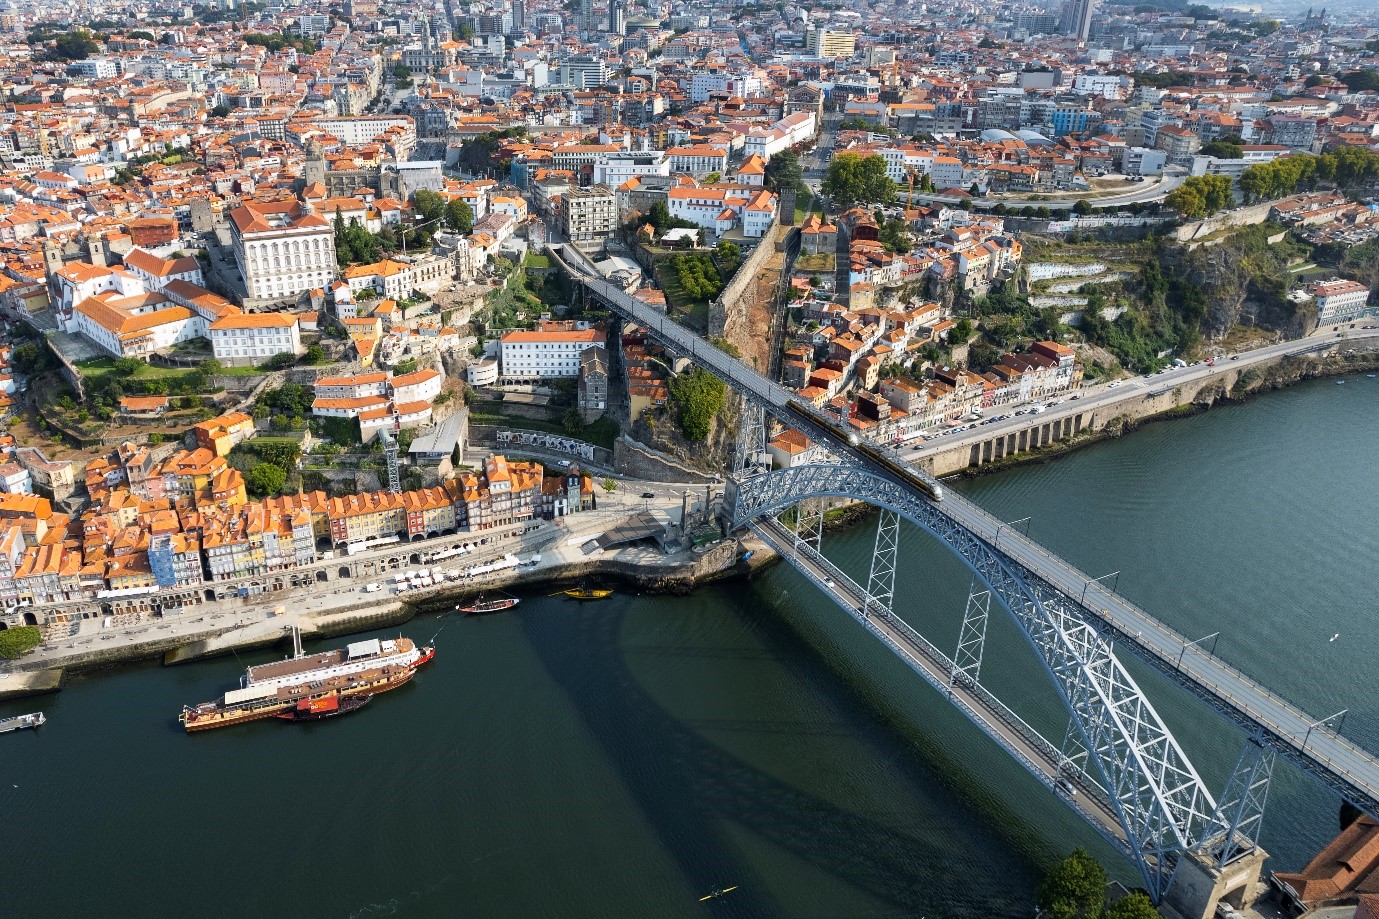 Alojamento Local no Porto de volta à vida